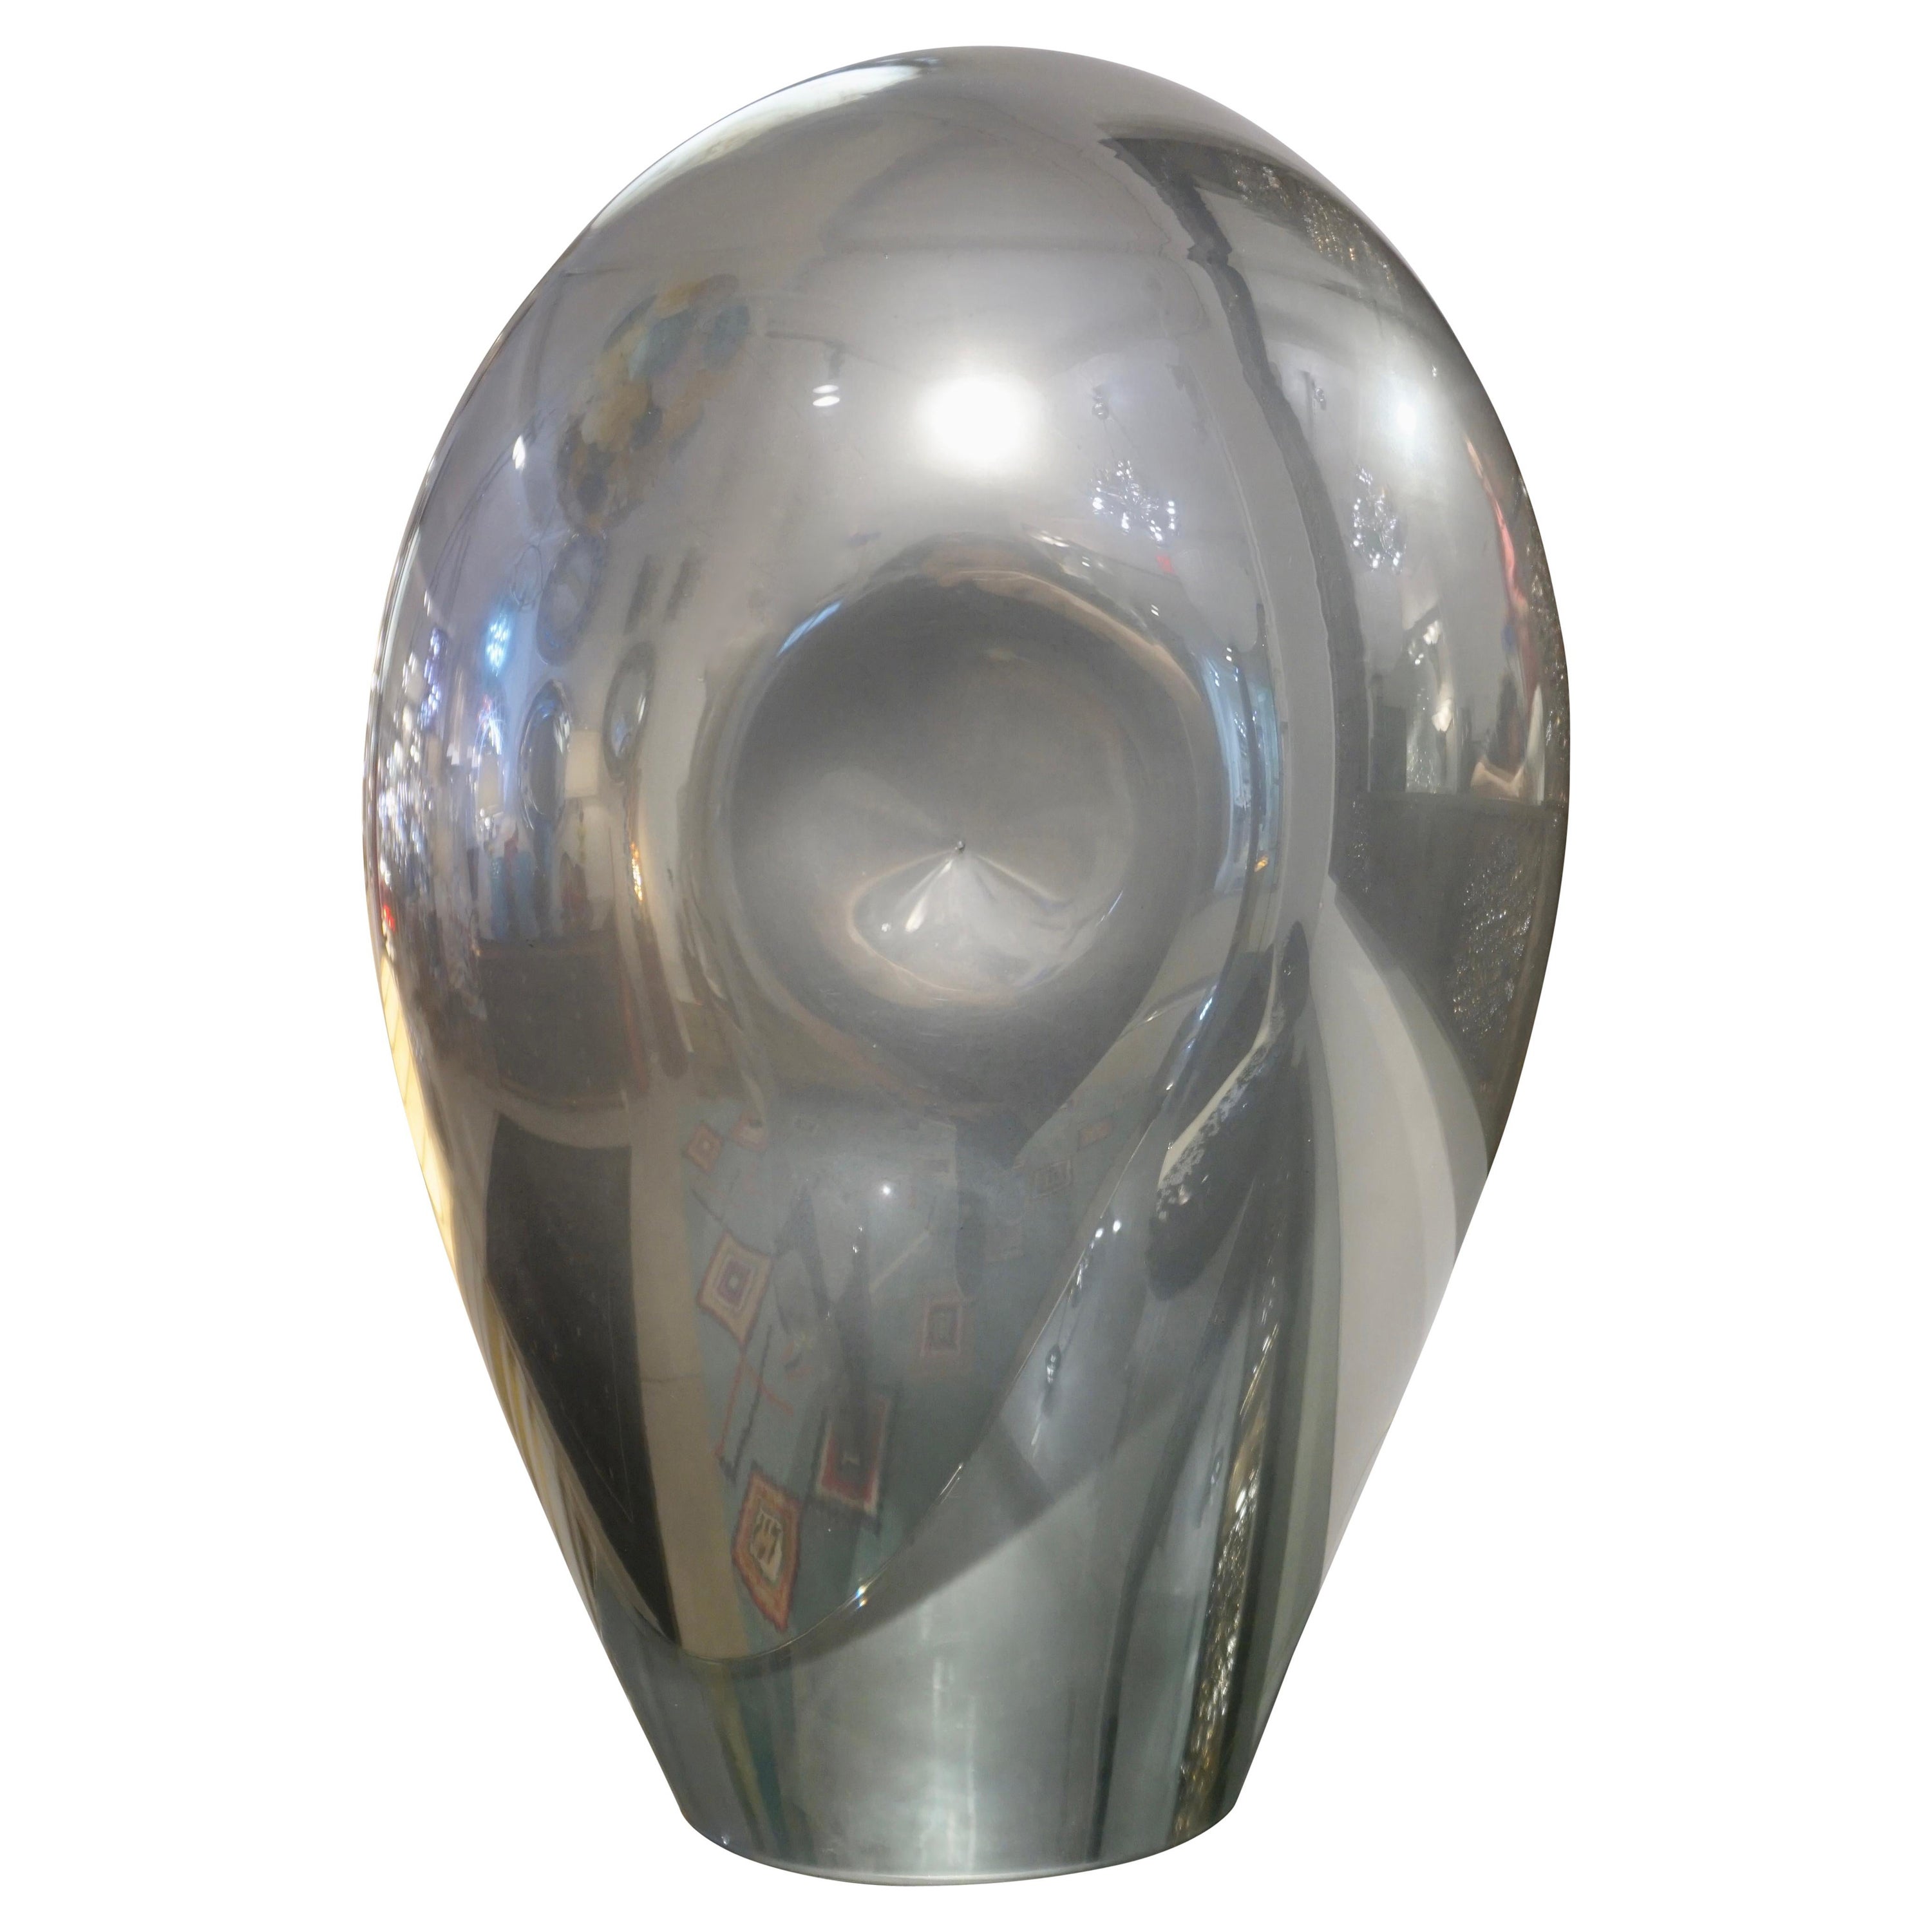 Abstrakte italienische Vintage-Skulptur-Lampe aus Silberguss-Spiegelglas, V. Nason, 1970er Jahre